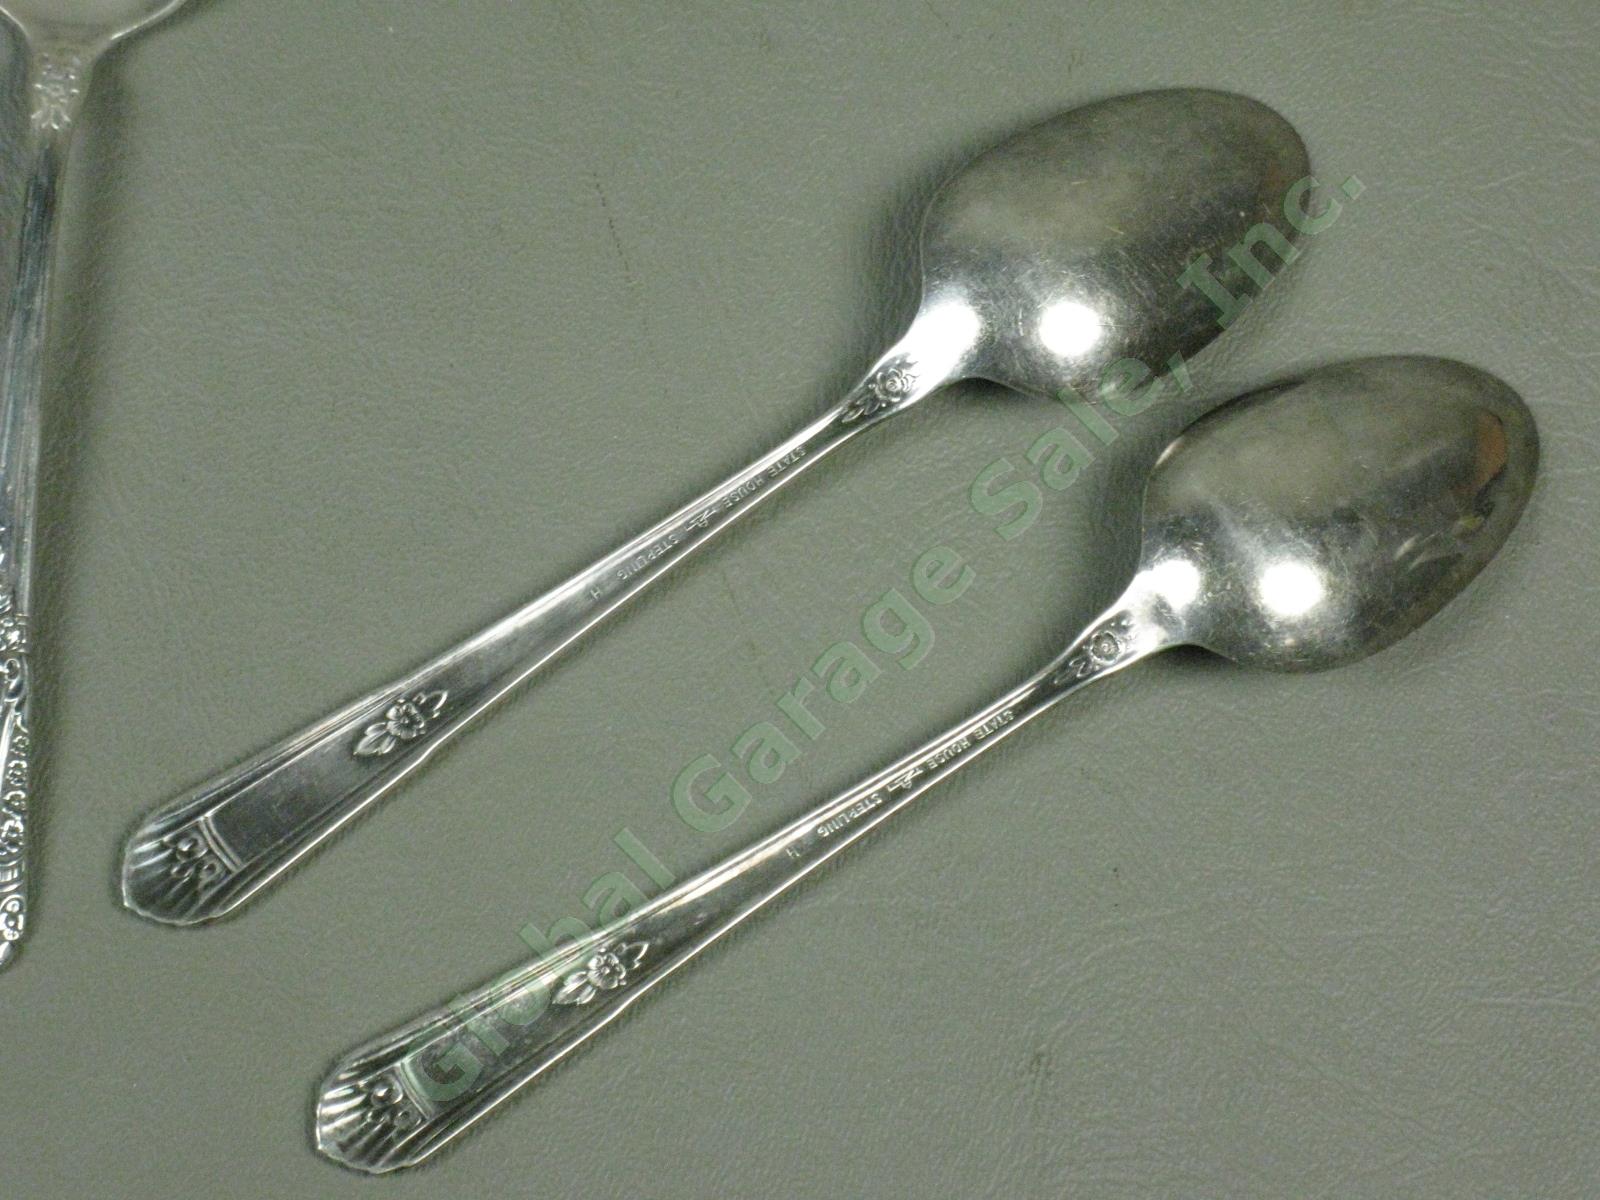 7 State House Inaugural Sterling Silver Teaspoons Spoons Silverware Flatware Set 3